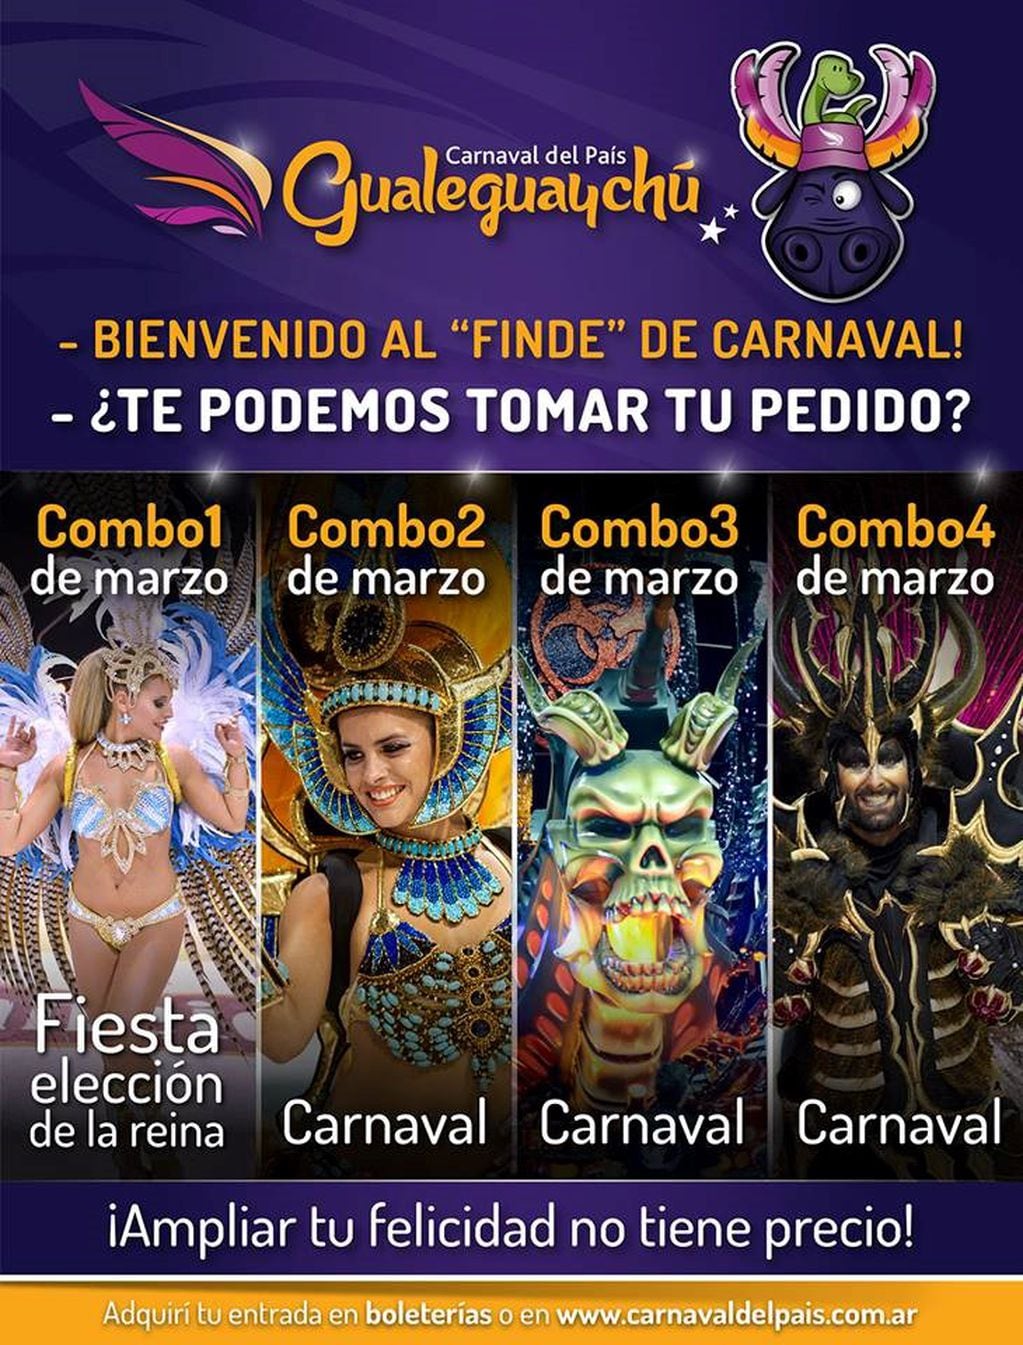 Flyer Promocional
Crédito: Carnaval del país